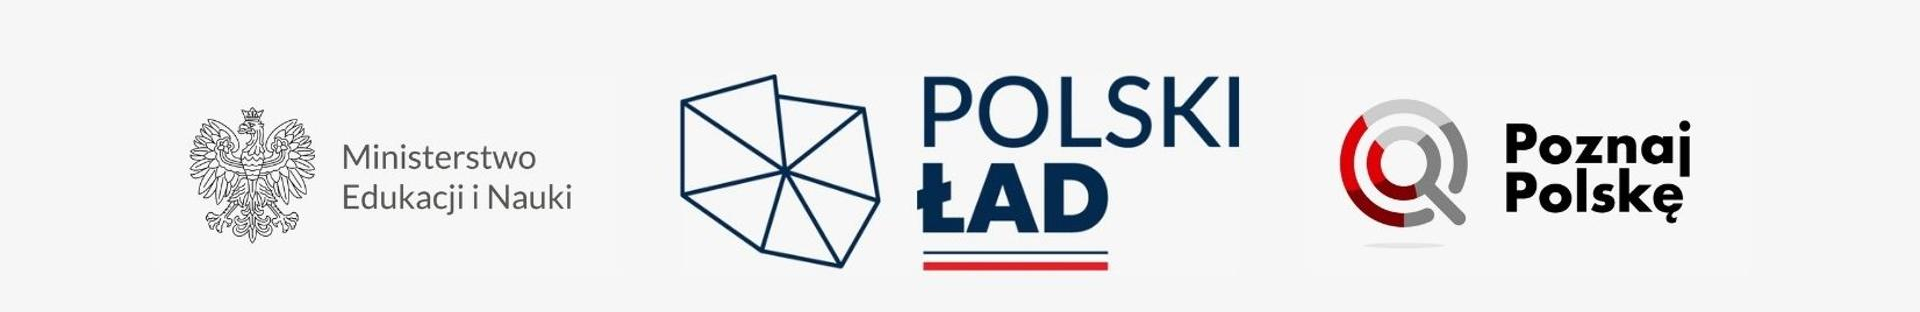 Logotyp Ministerstwo Edukacji i Nauki, Polski Ład, Poznaj Polskę